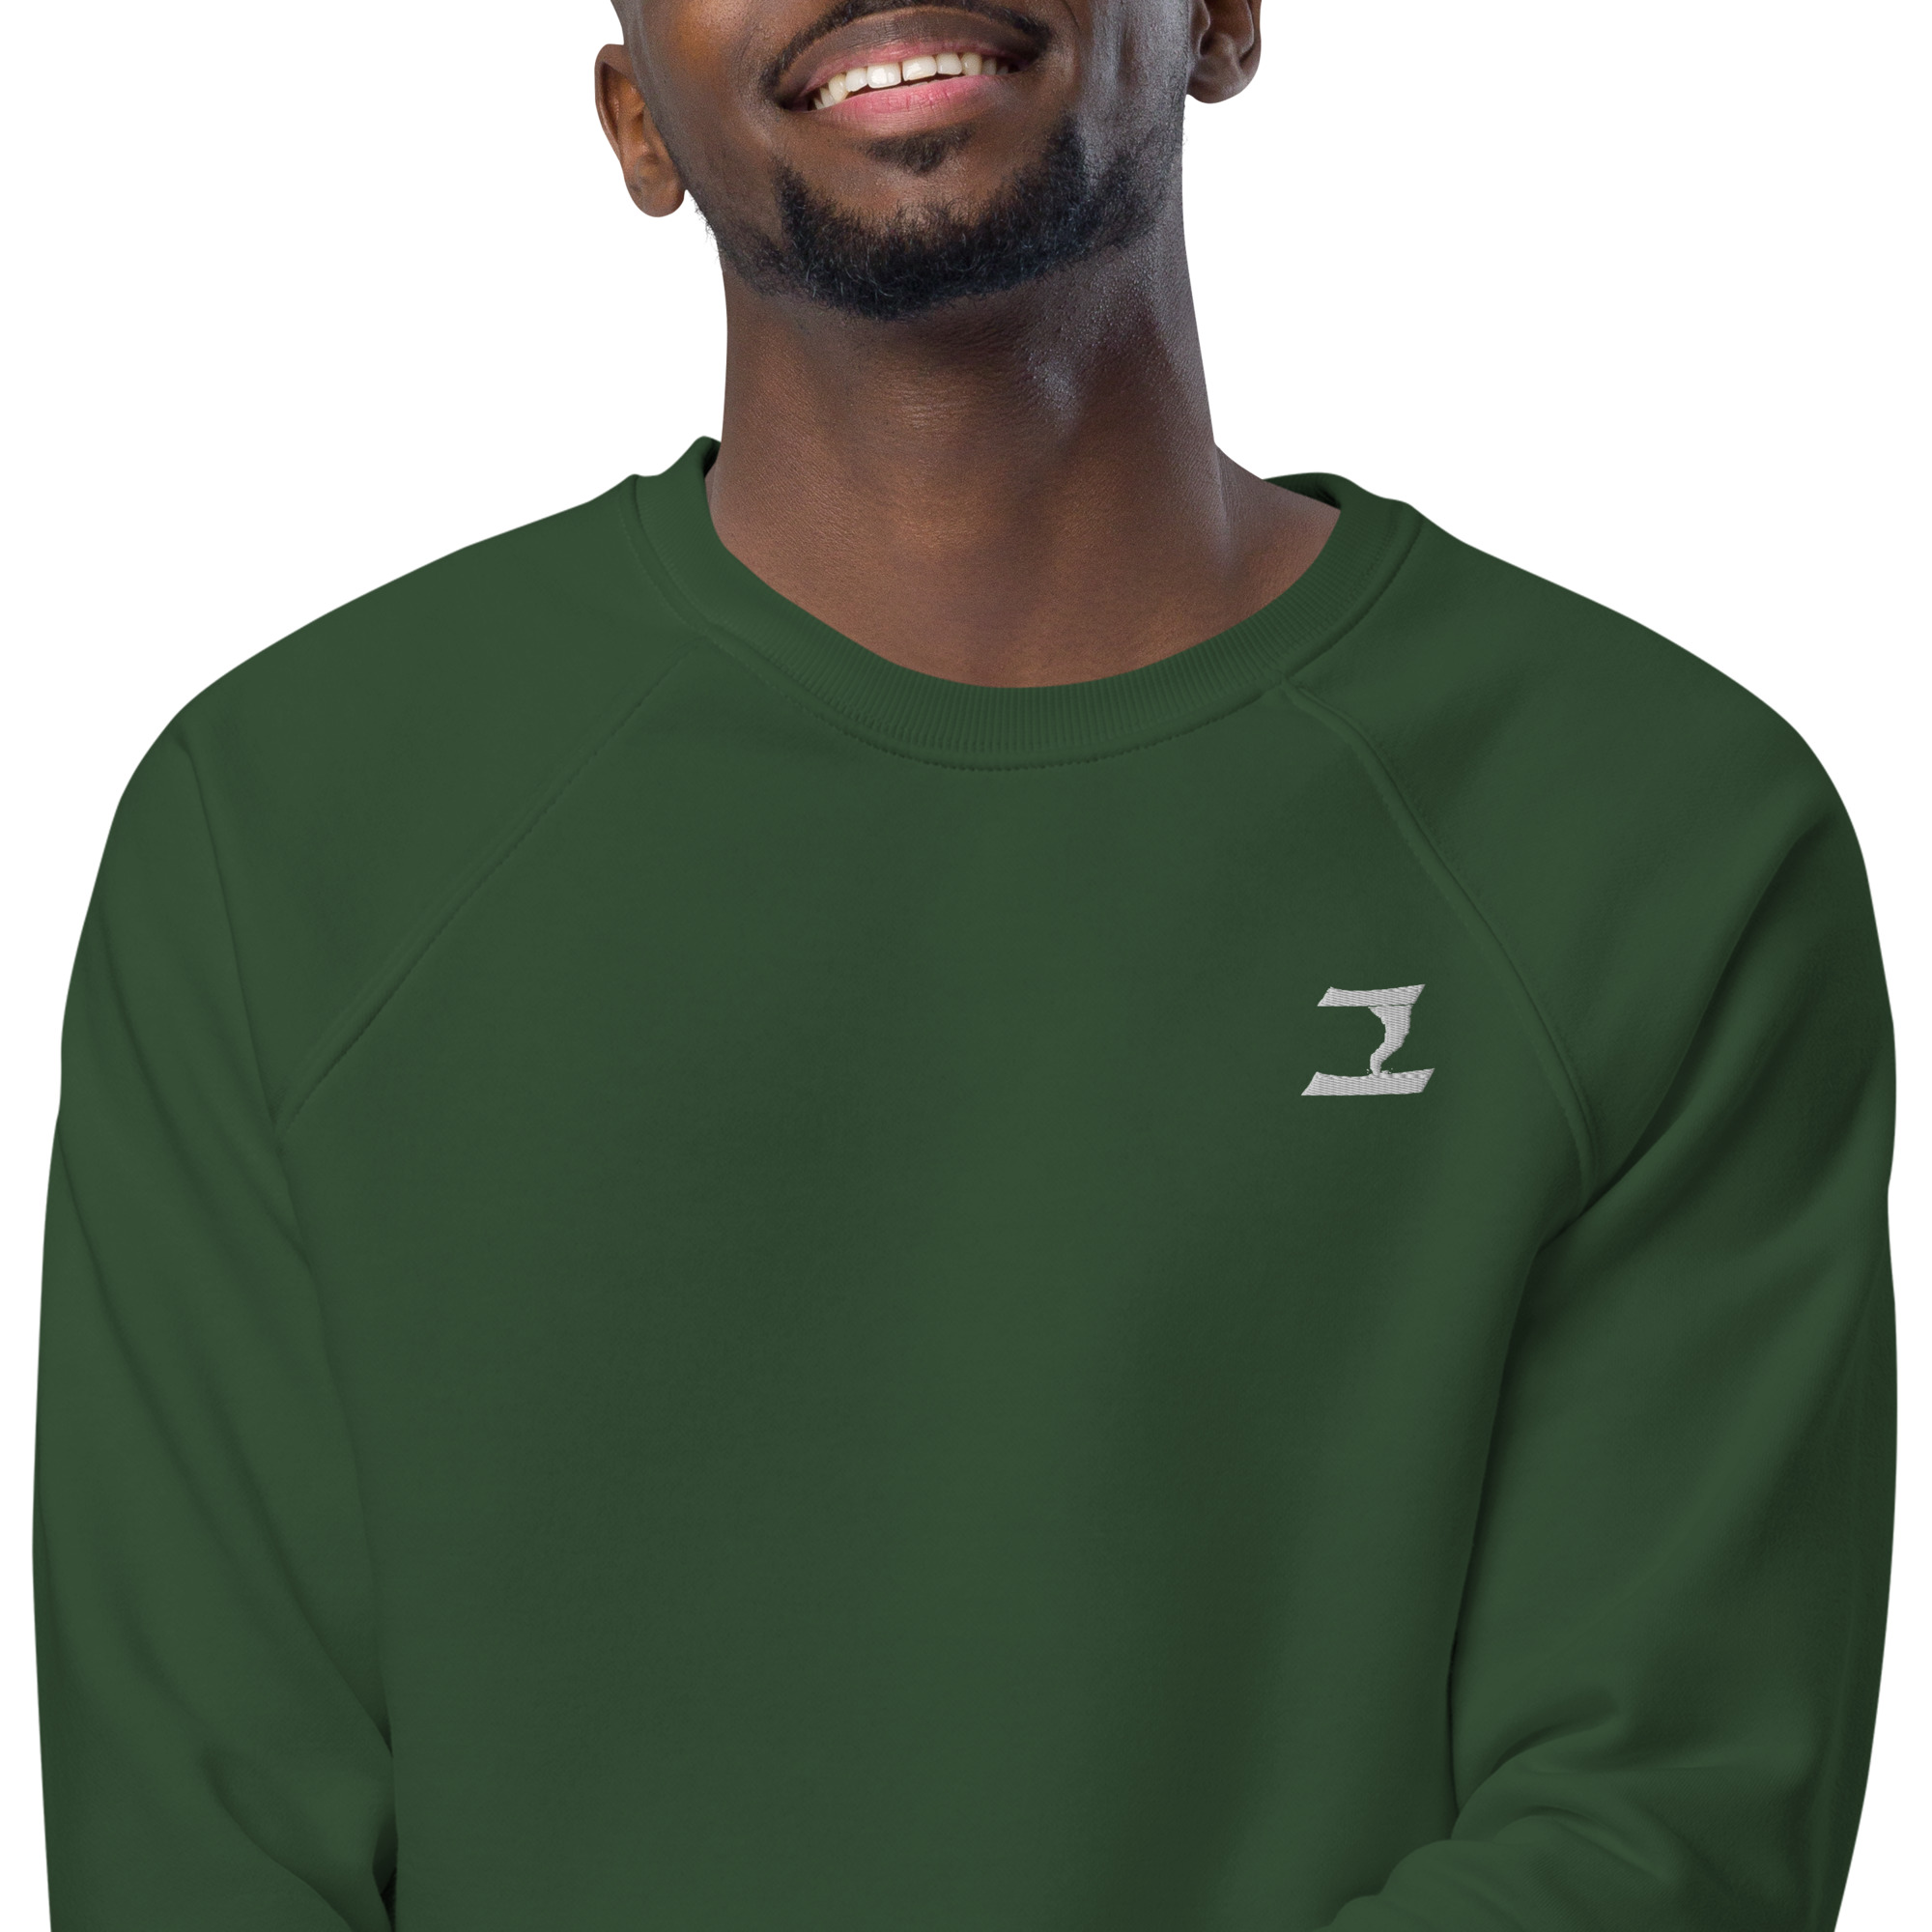 unisex-organic-raglan-sweatshirt-bottle-green-zoomed-in-2-6334e2624c717.jpg